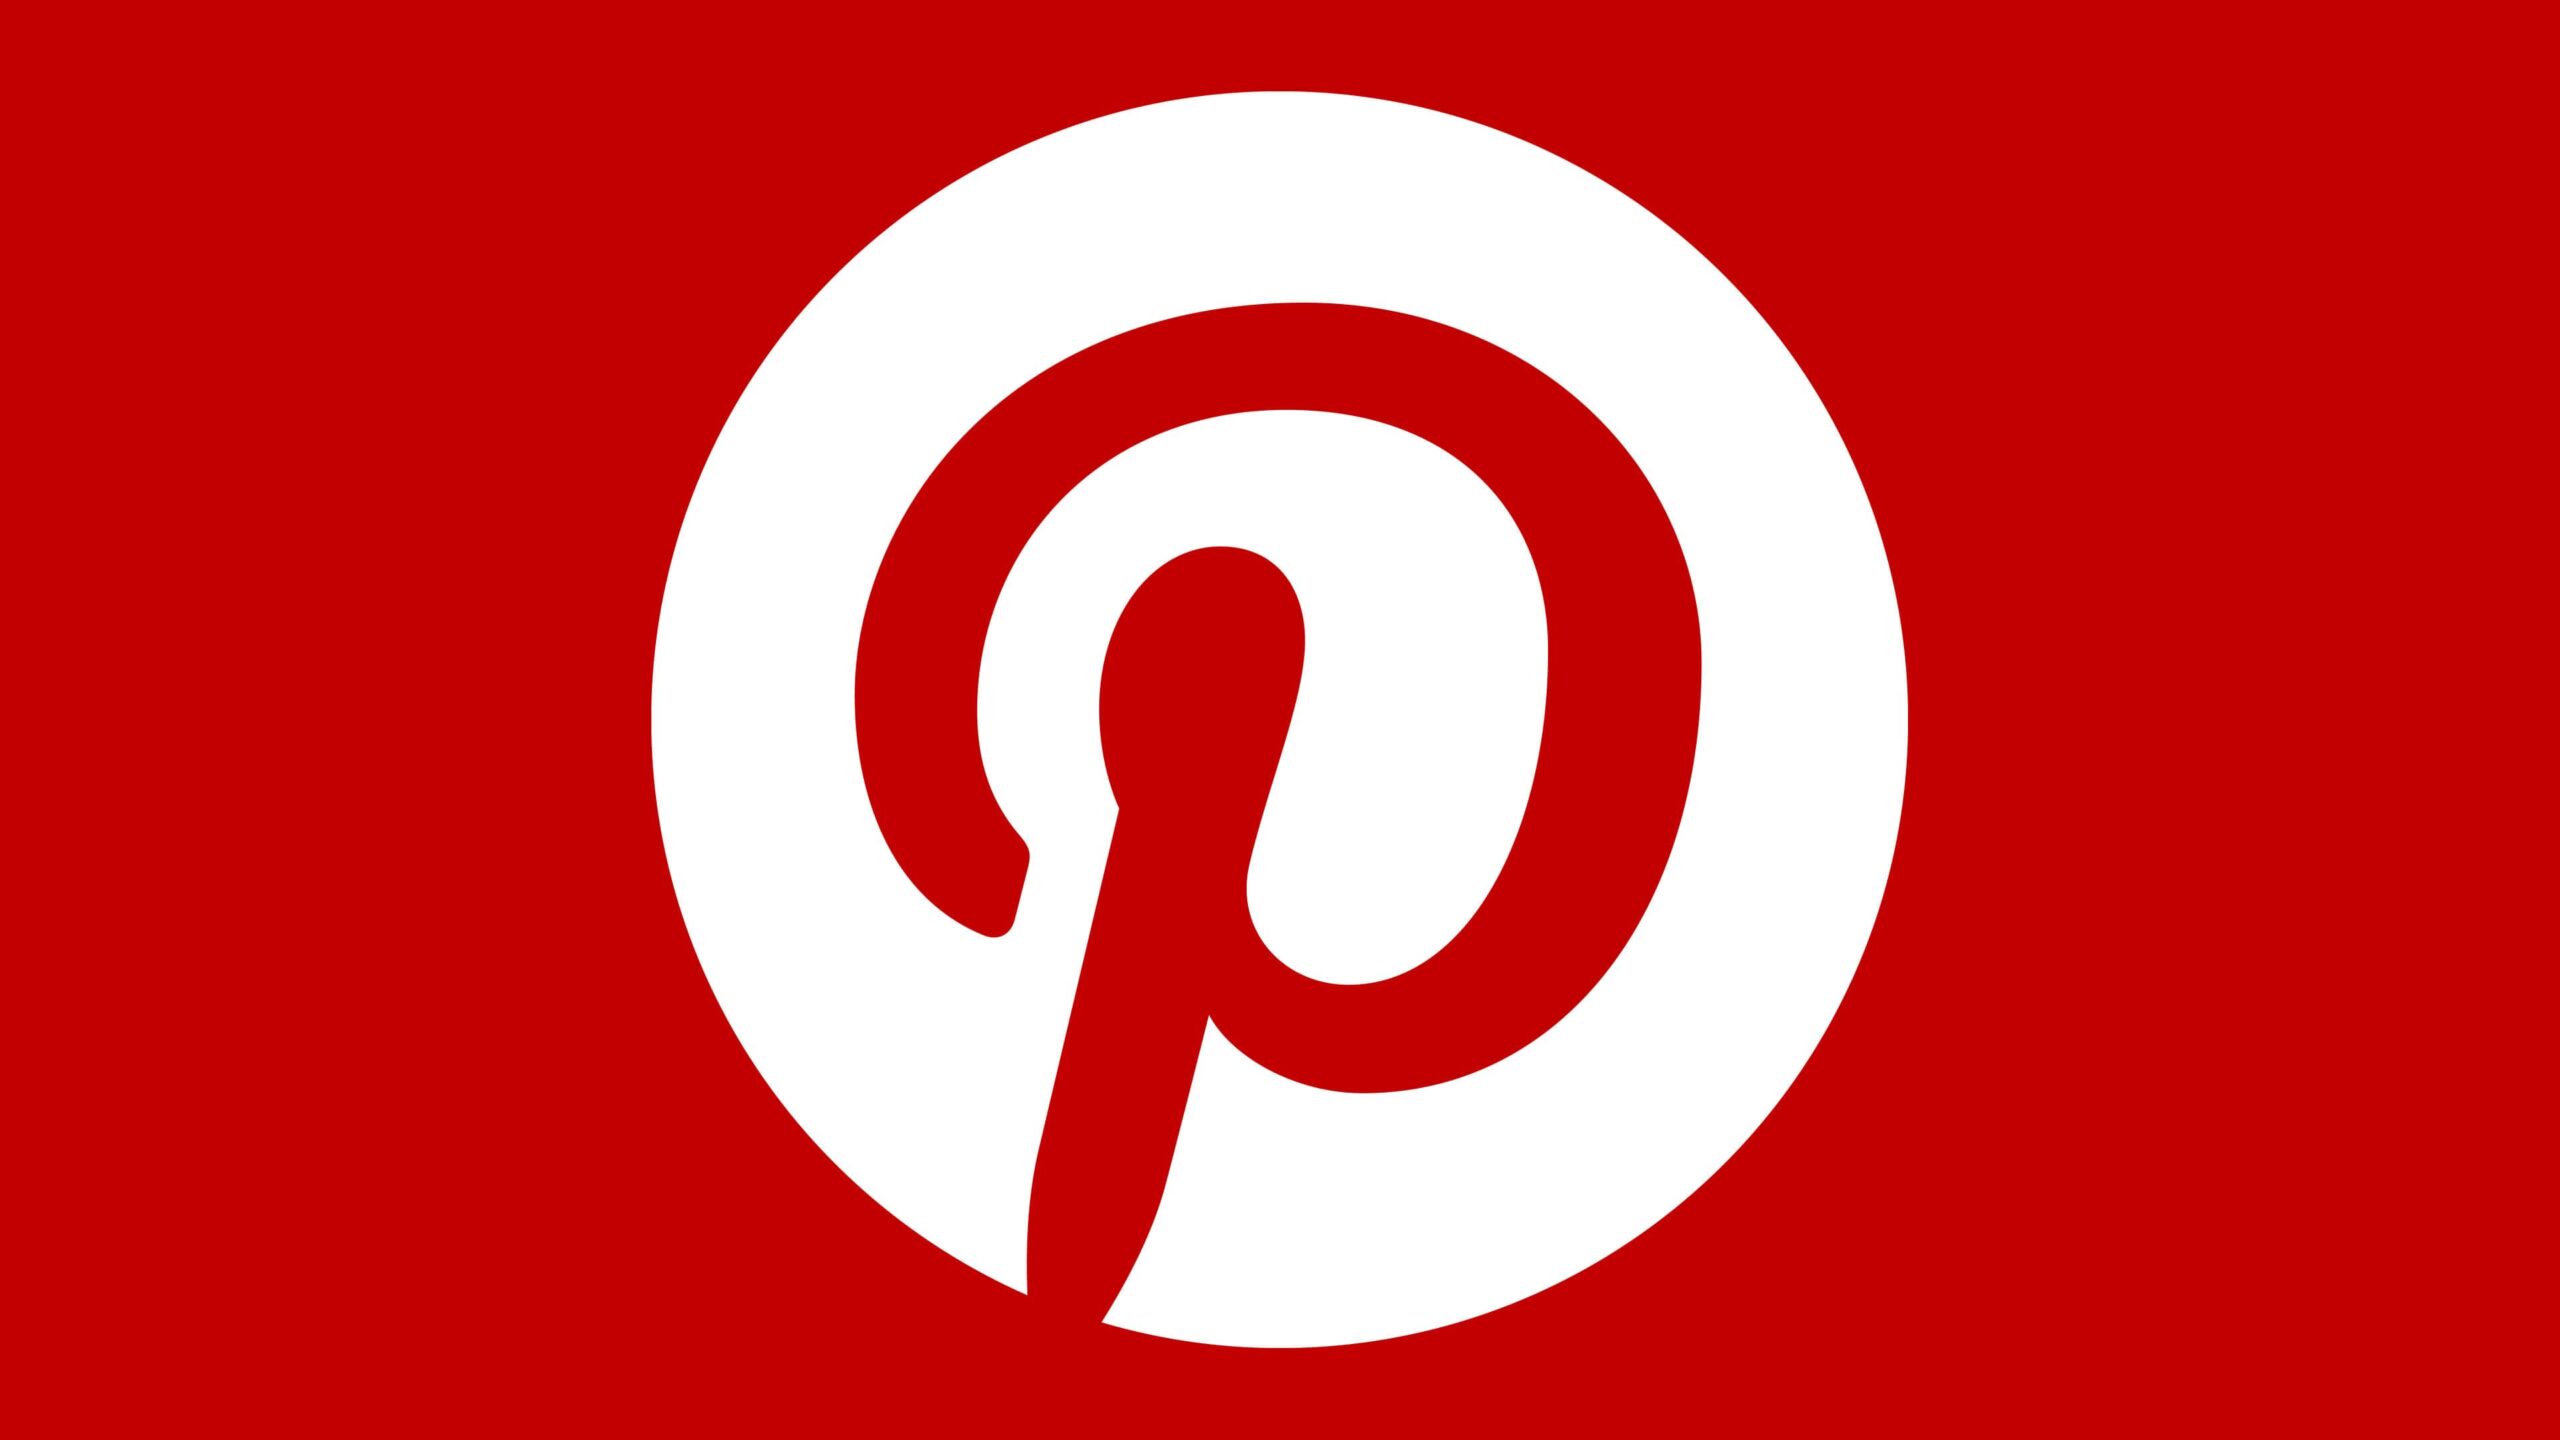 Обучение по Pinterest. ТОП-9 Онлайн-курсов + 5 Бесплатных